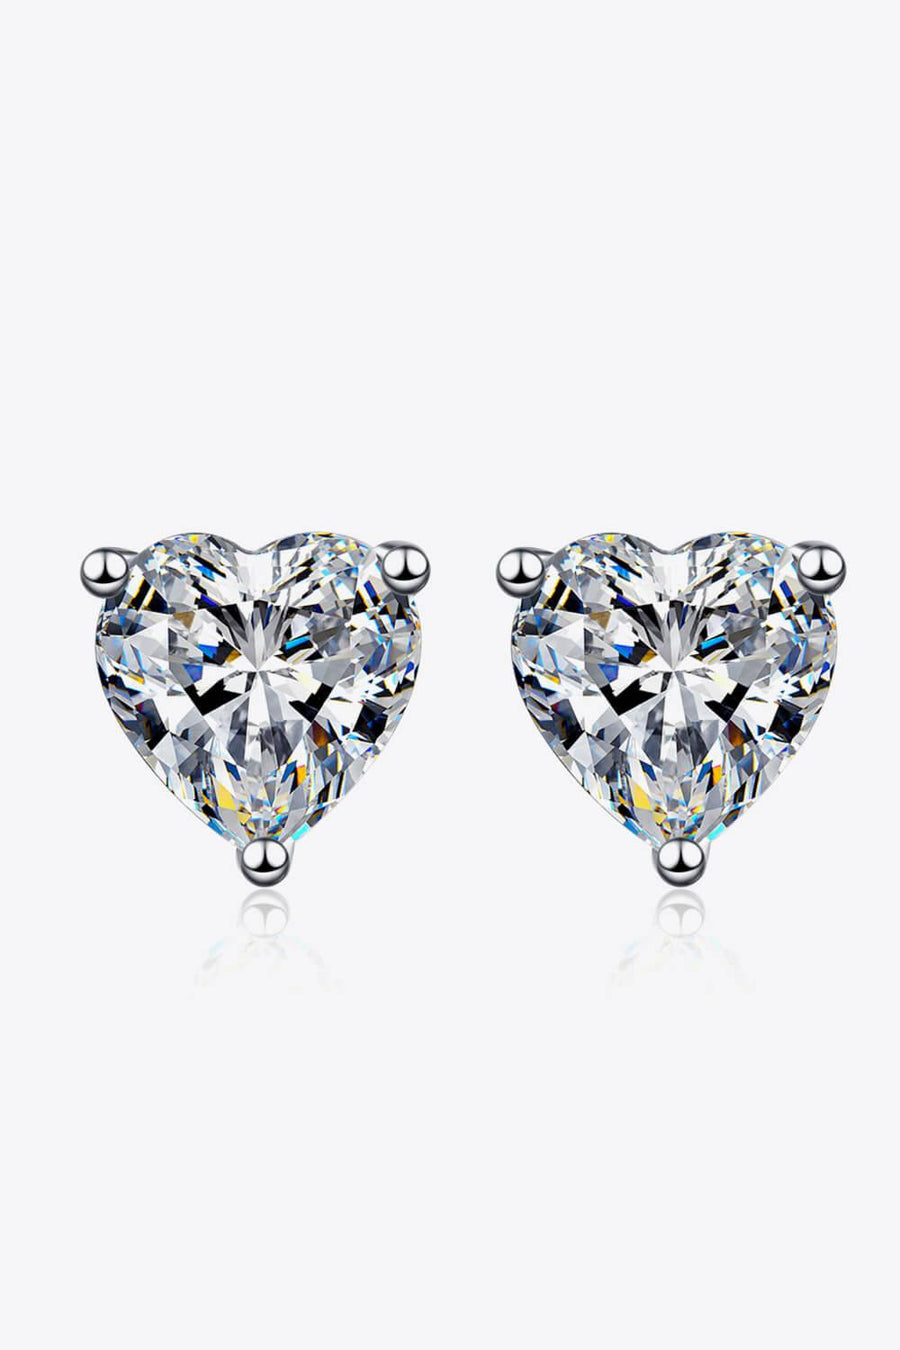 2 Carat Moissanite Heart-Shaped Stud Earrings - Trendha